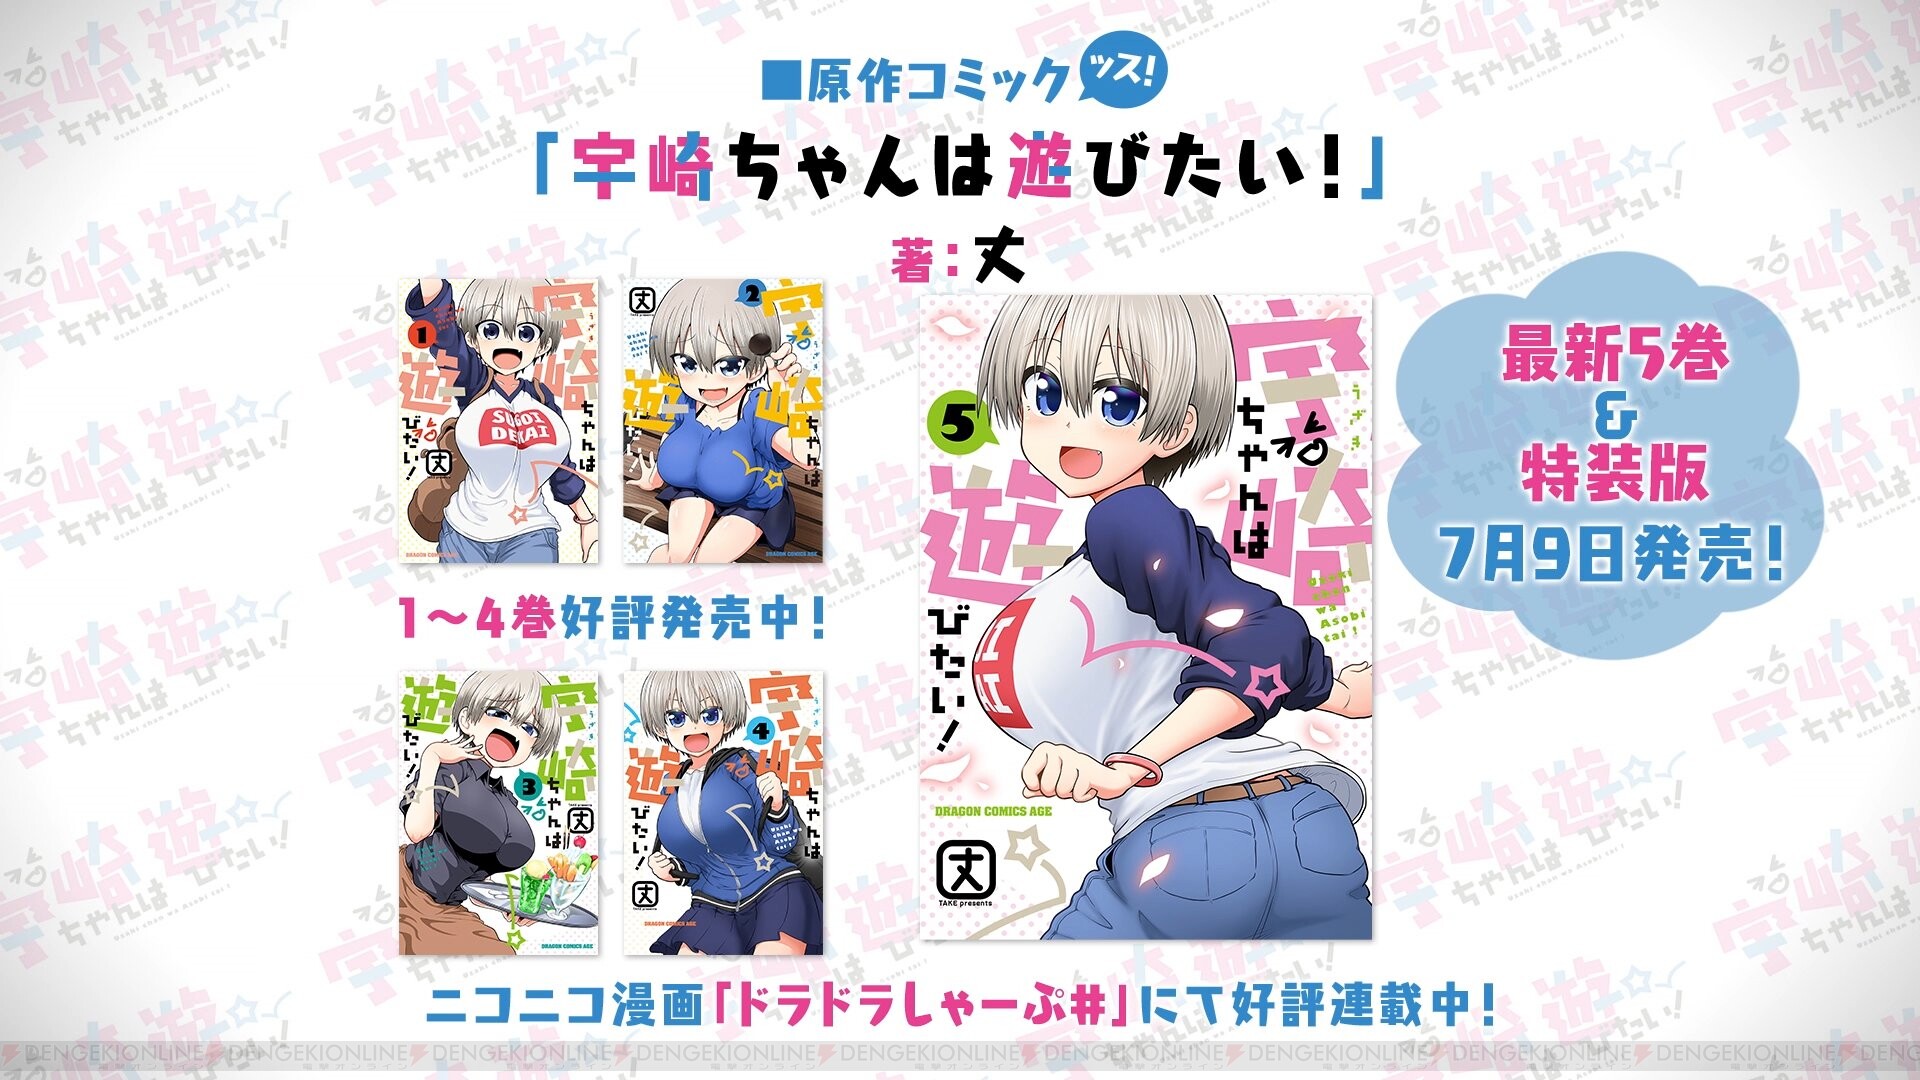 アニメ前に漫画で予習を 宇崎ちゃんは遊びたい 最新5巻が7月9日発売 電撃オンライン